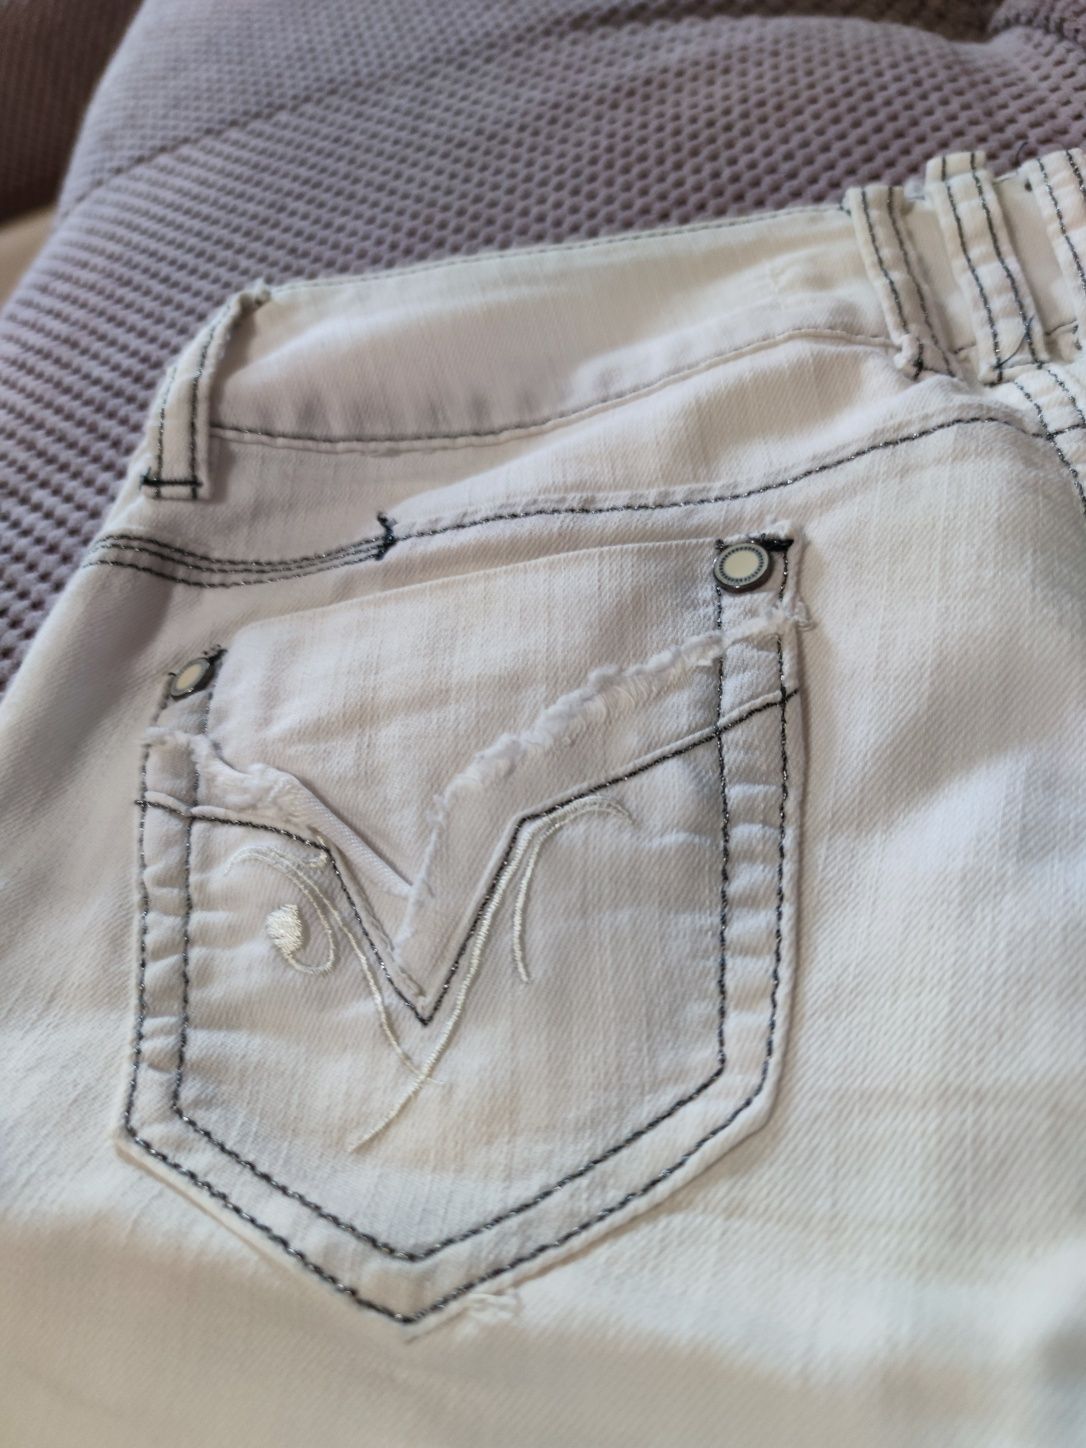 Очень красивые джинсы, с красивыми деталями, размер указан27,см.замеры